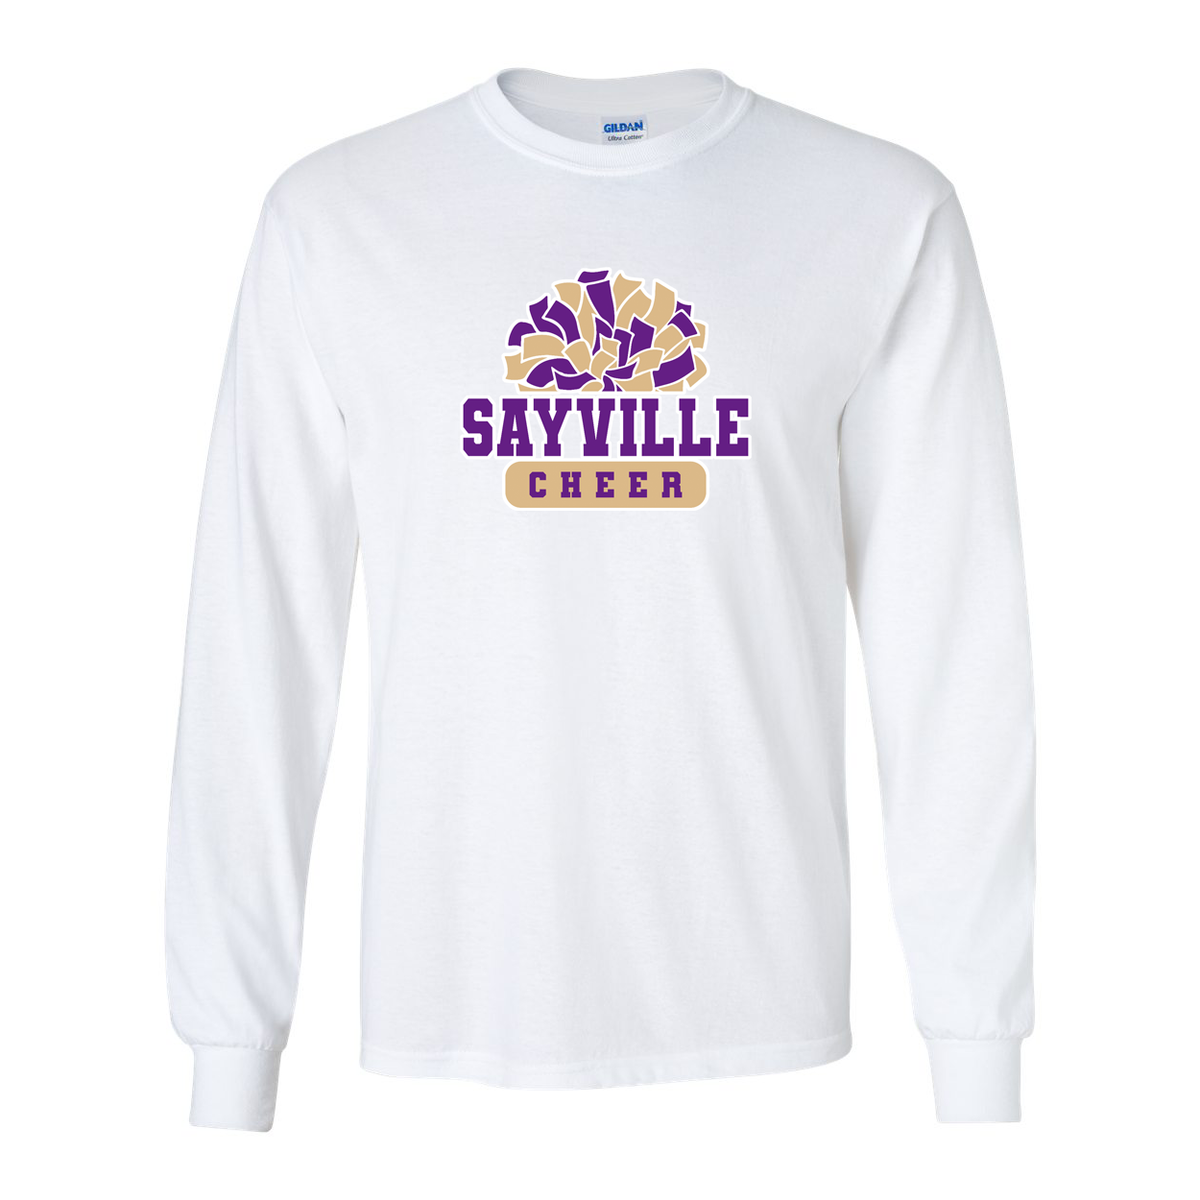 Sayville Cheer Ultra Cotton Long Sleeve Shirt